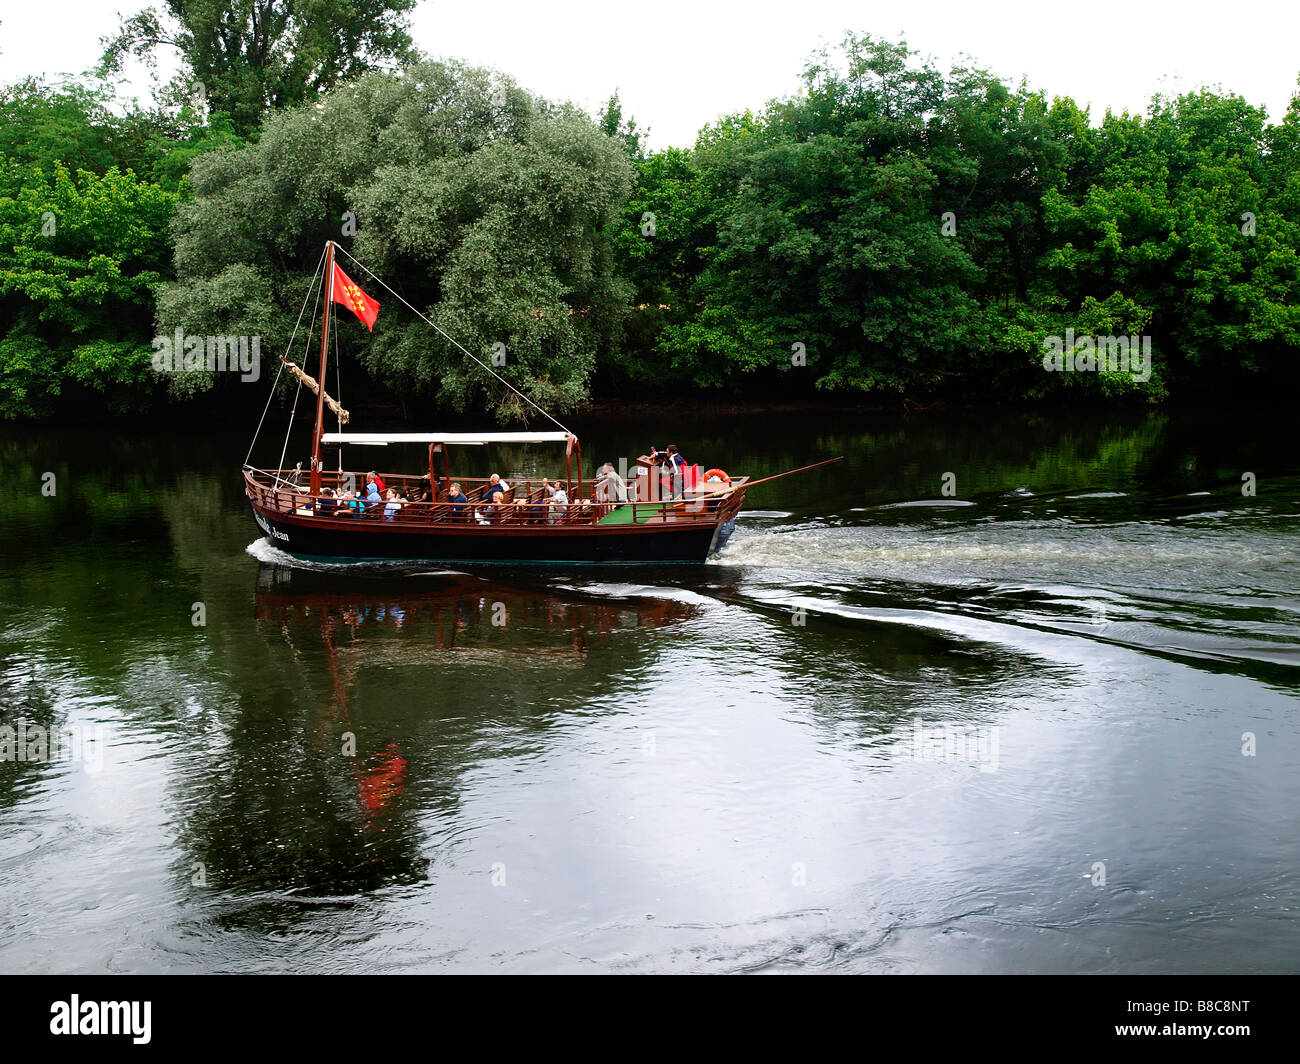 River boat on the Dordogne near the village of La Rocque-Gageac Stock Photo